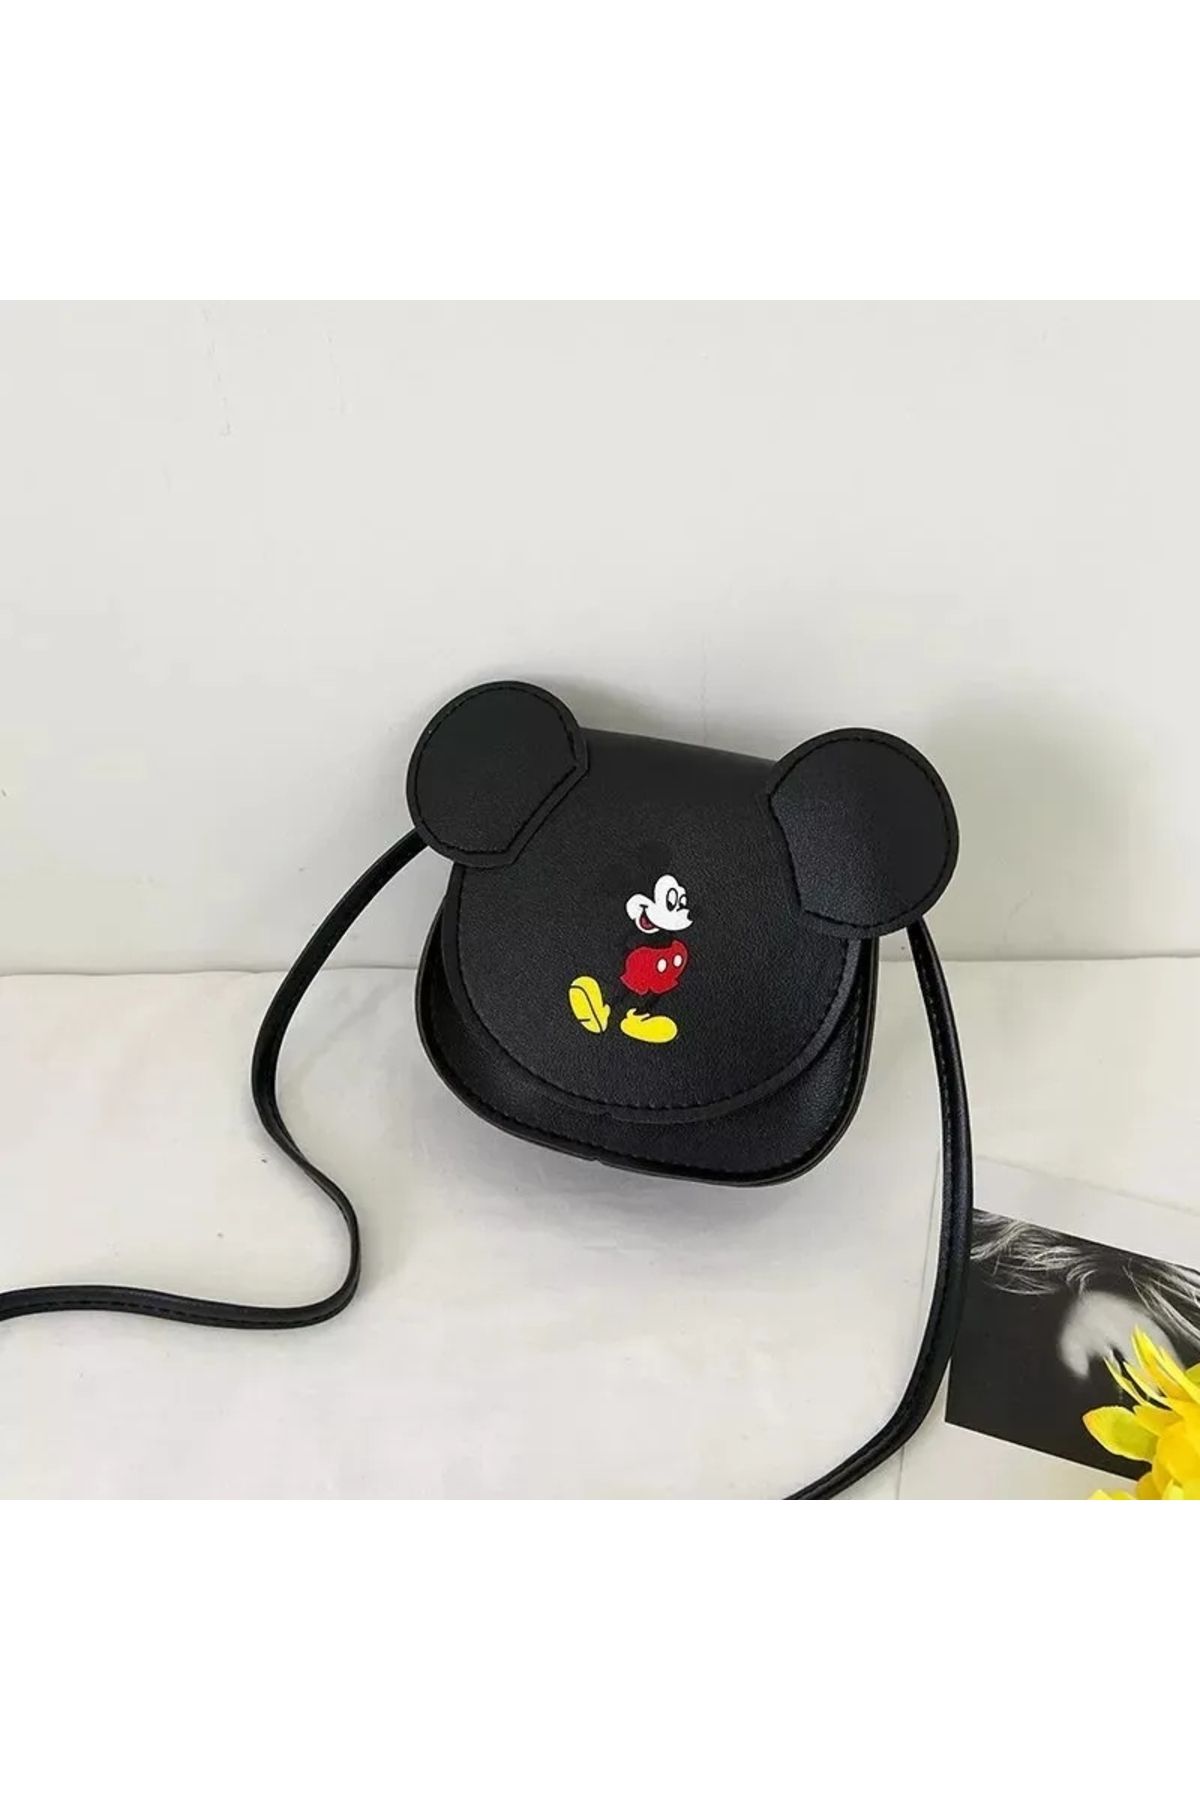 Zehra Aksesuar Mickey mouse desenli kulaklı deri kapaklı çapraz çocuk çanta